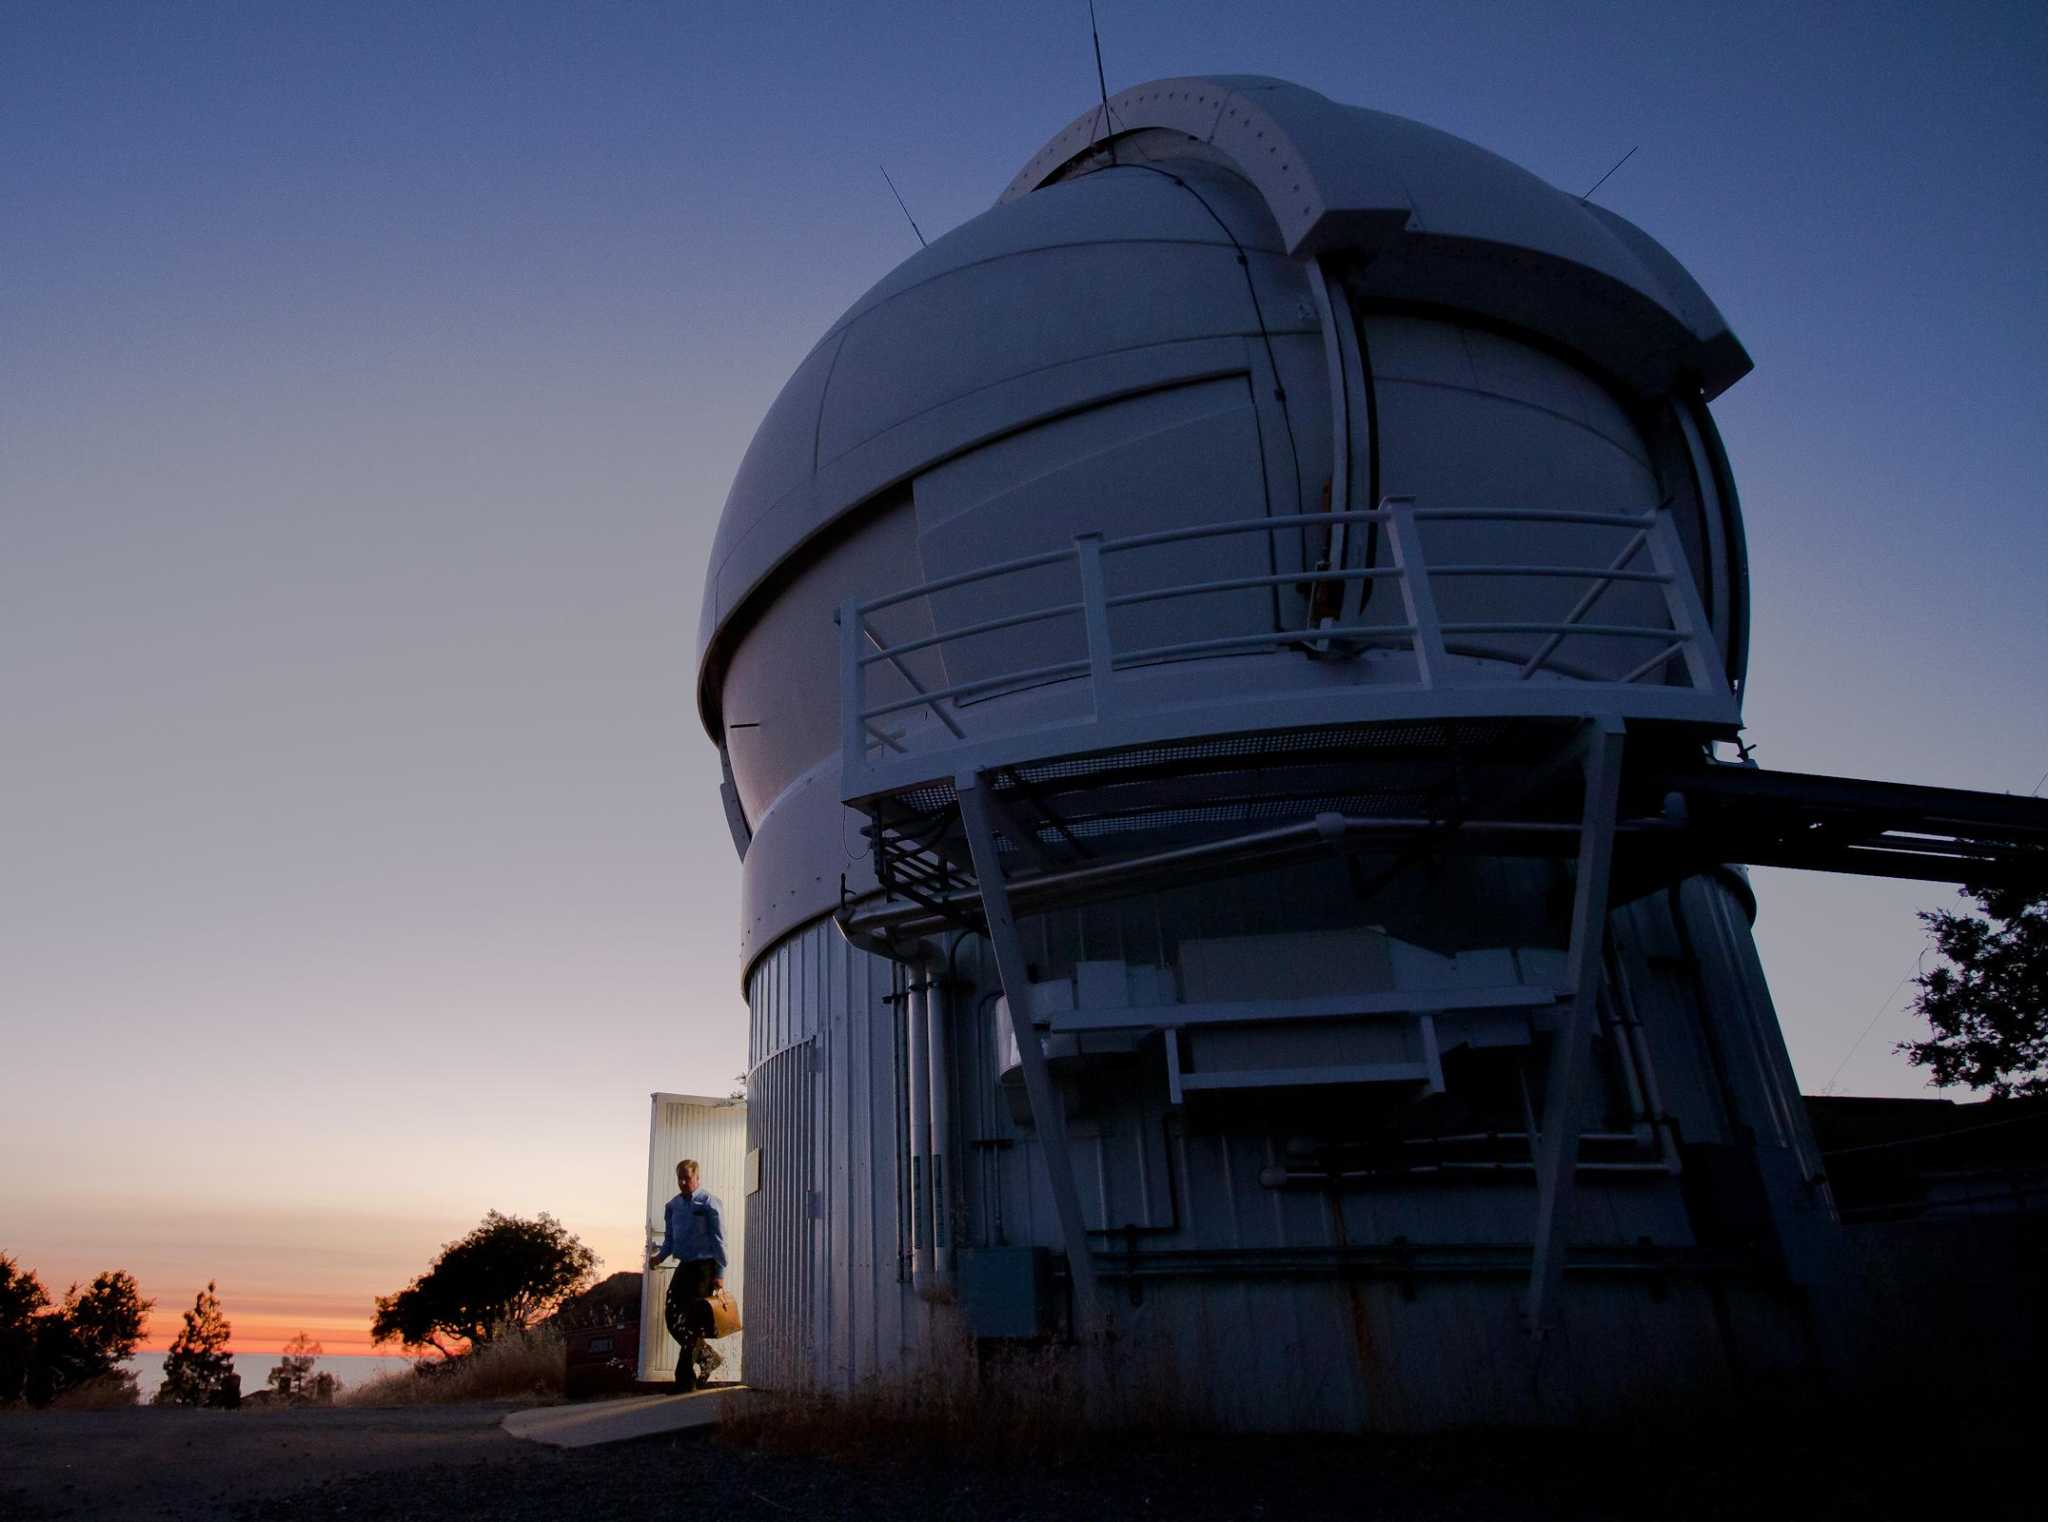 Um “desfile” de planetas cria uma “bomba de luz cósmica” para observadores de estrelas na região do Golfo